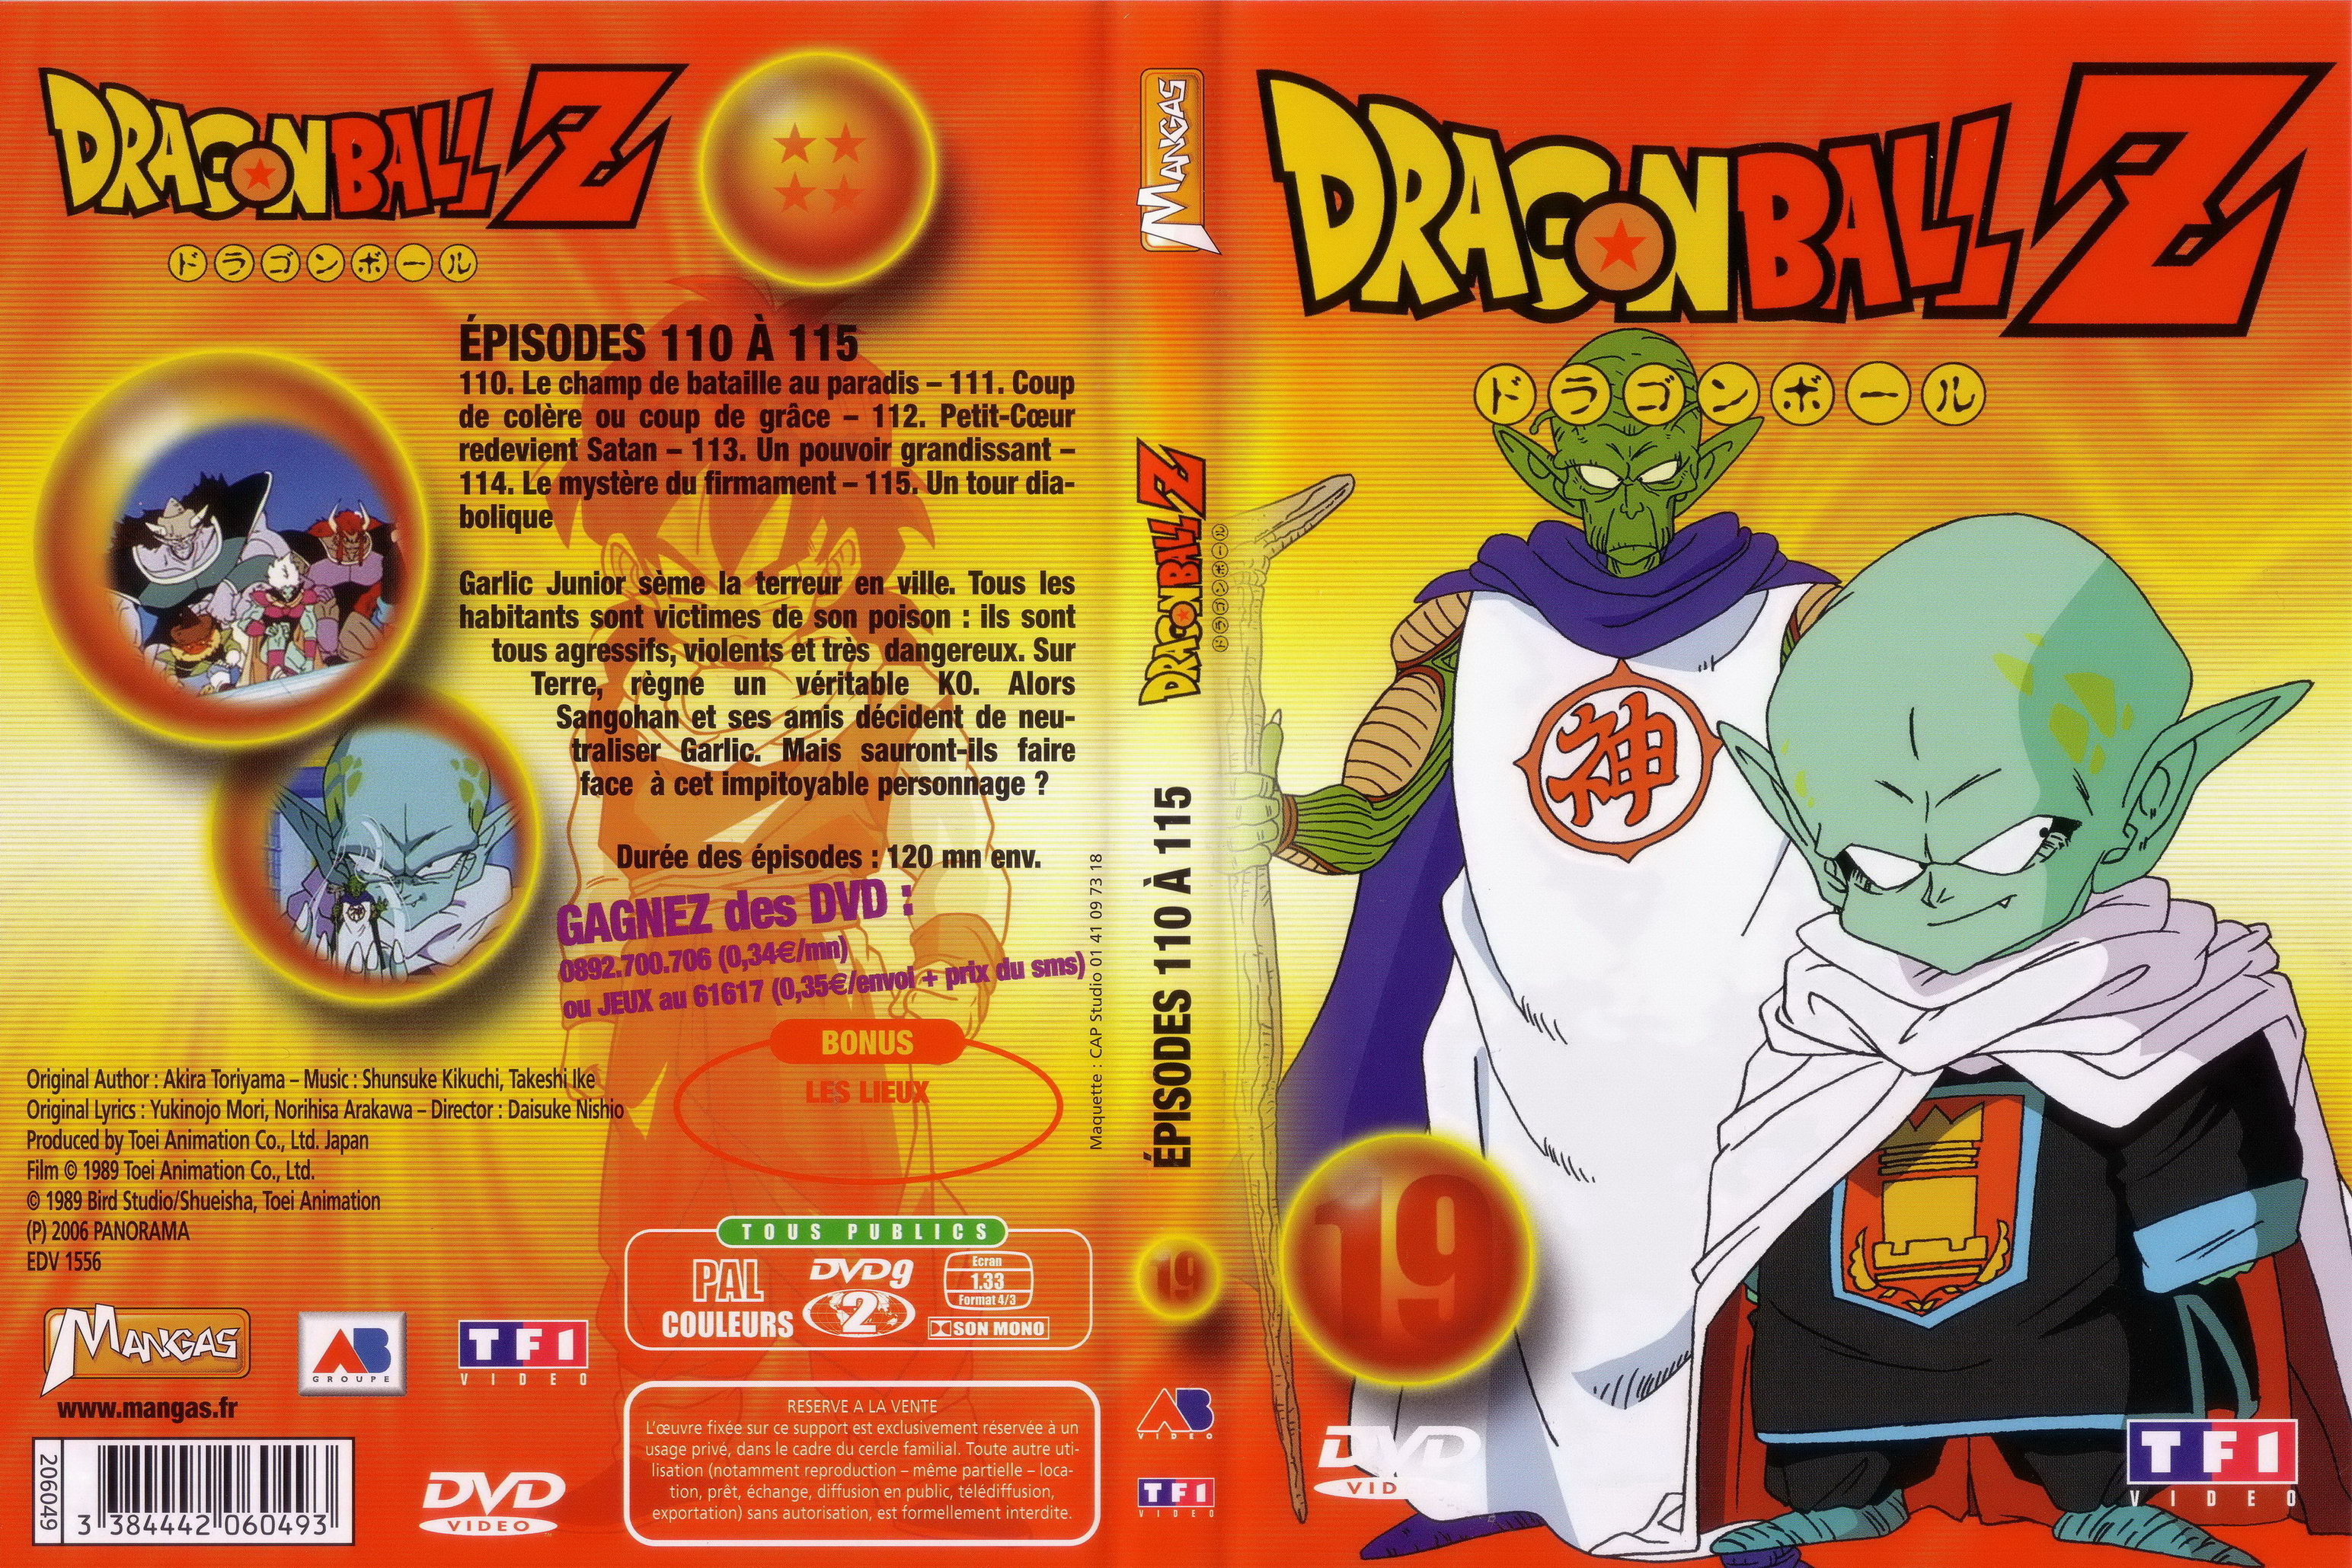 Jaquette DVD Dragon ball Z vol 19 v2